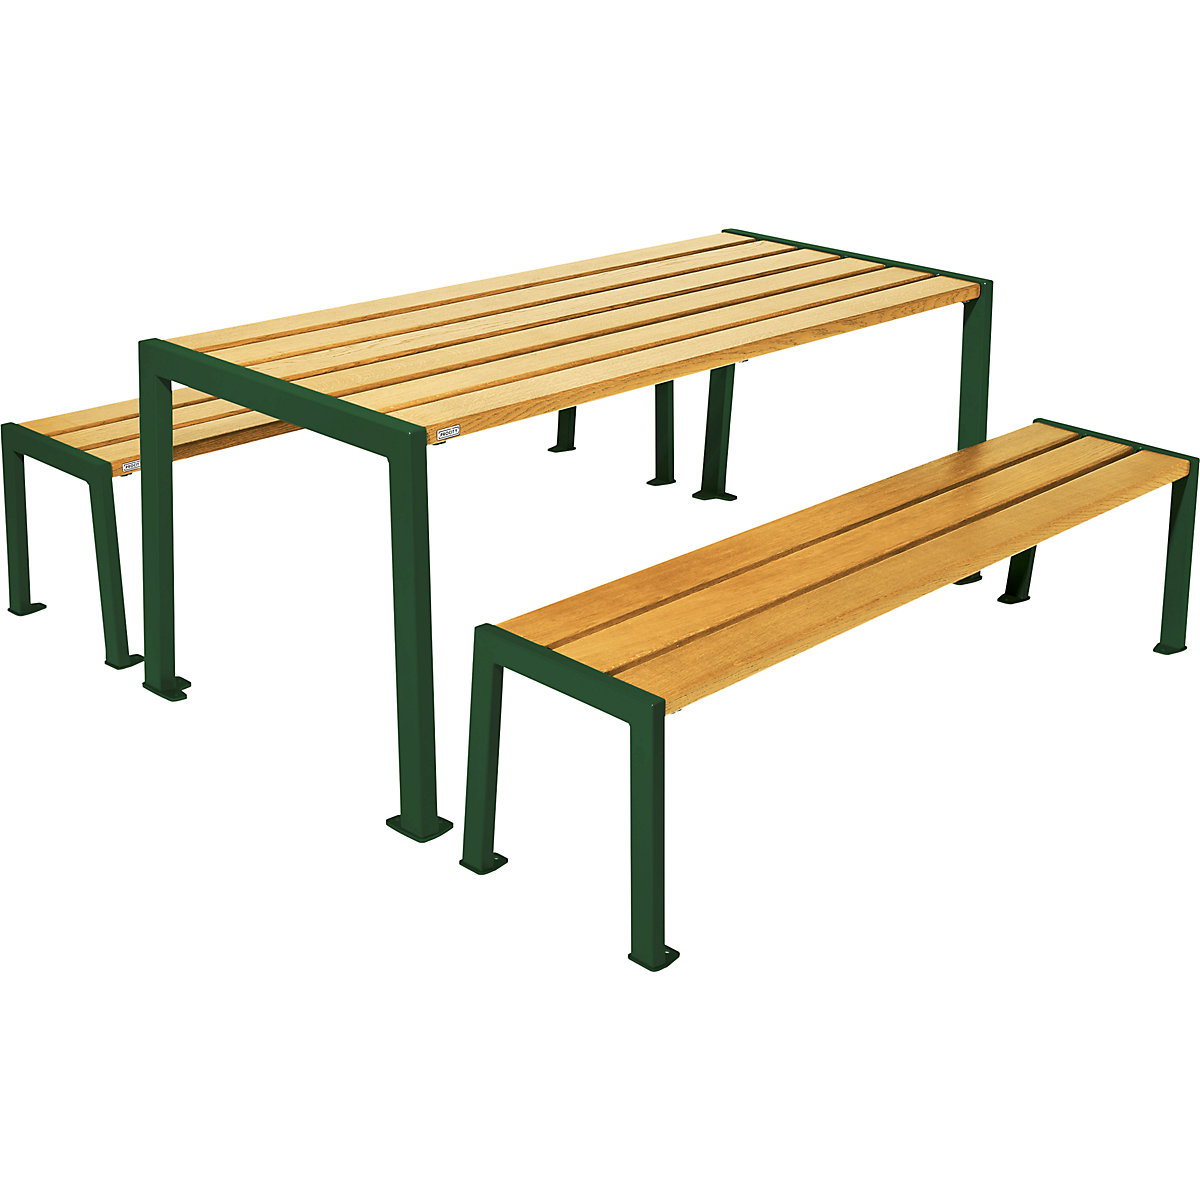 Garnitura mize in klopi Silaos® – PROCITY, dolžina 1800 mm, zelene barve / svetli hrast-9